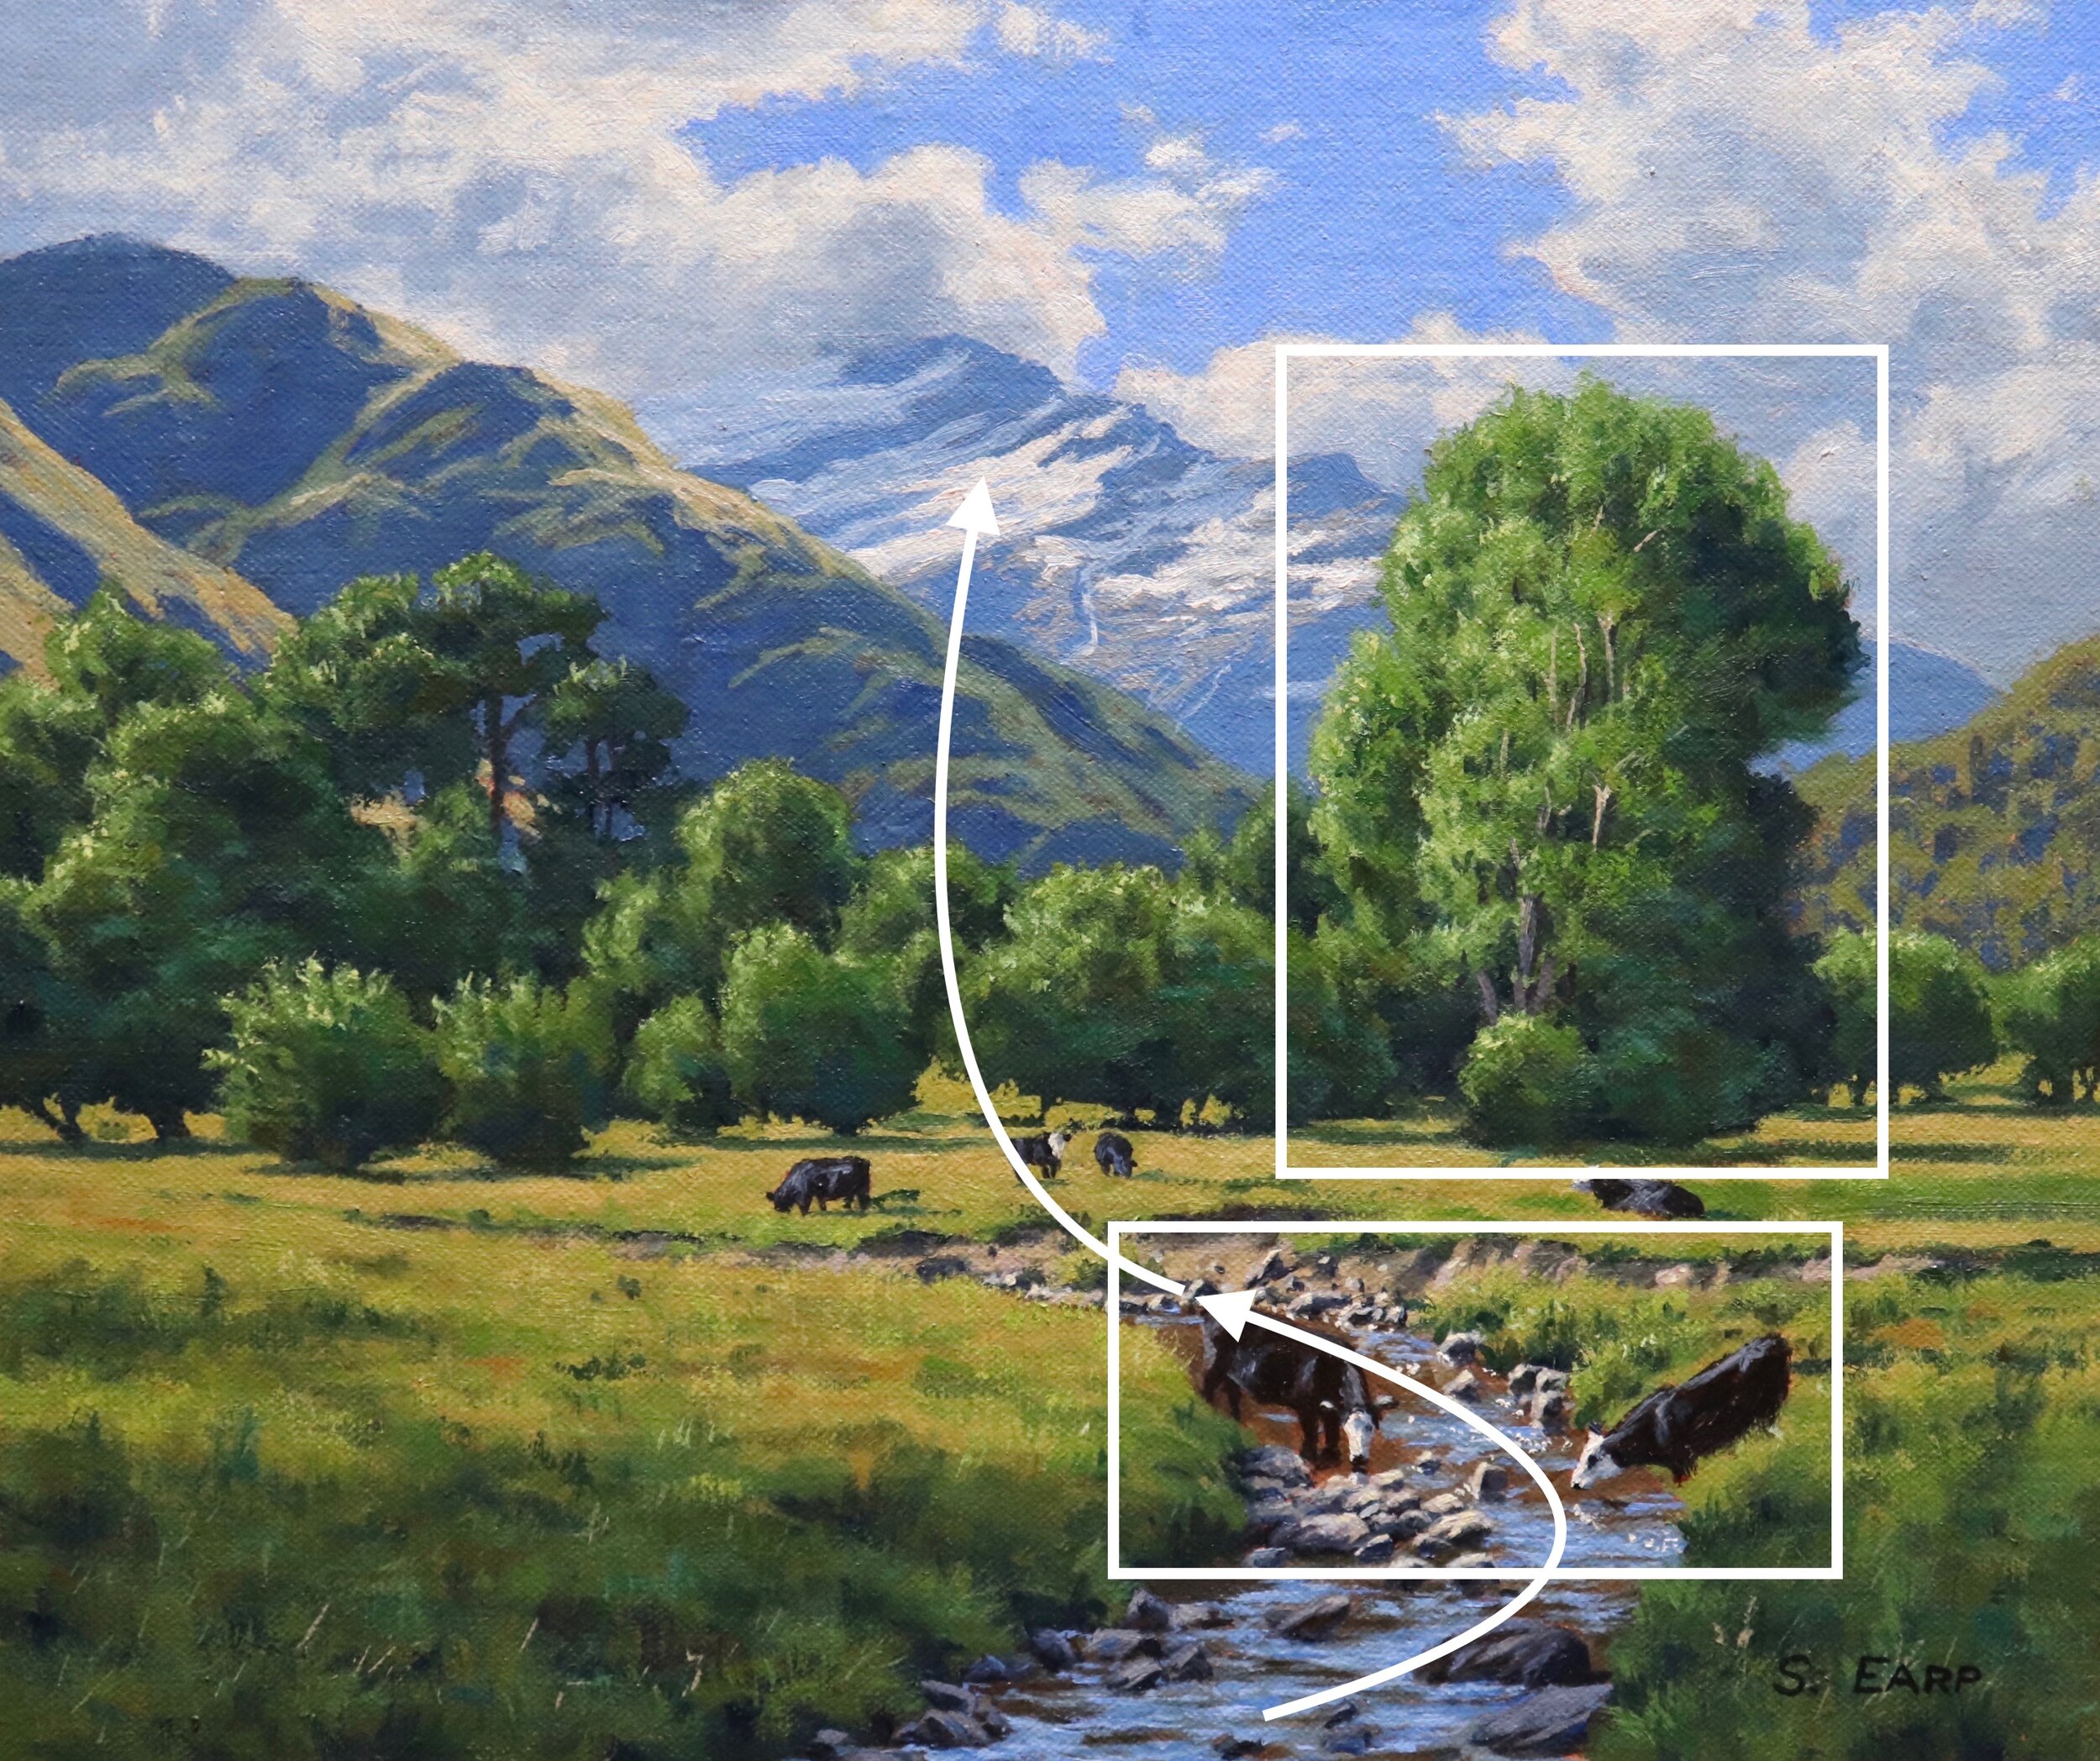 Matukituki Valley - Samuel Earp - oil painting copy 6.jpeg